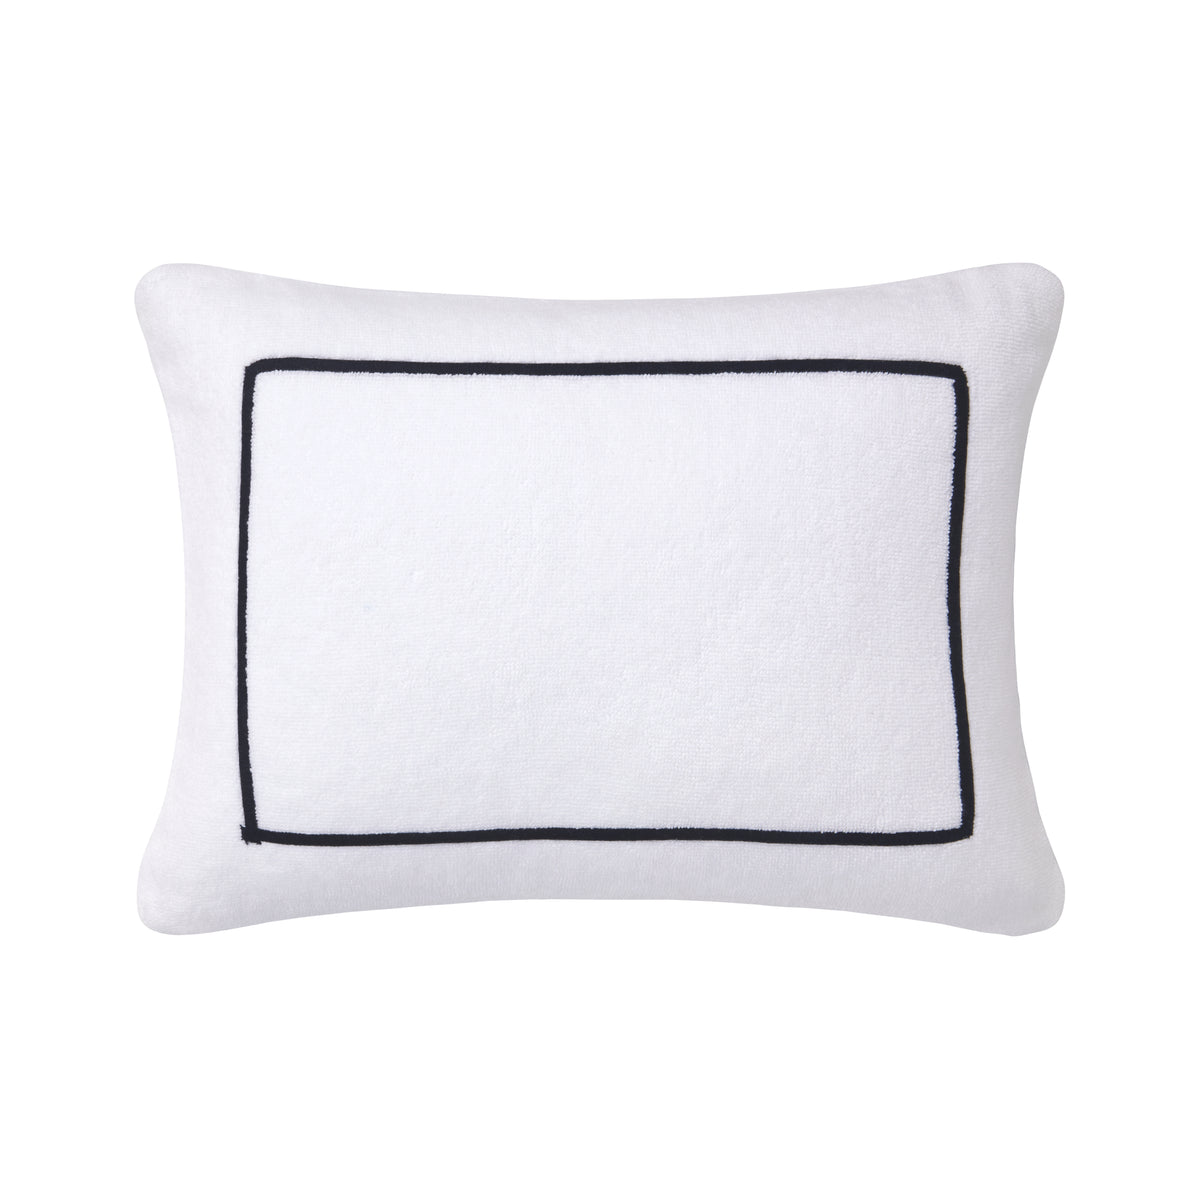 Croisiere Beach Pillow